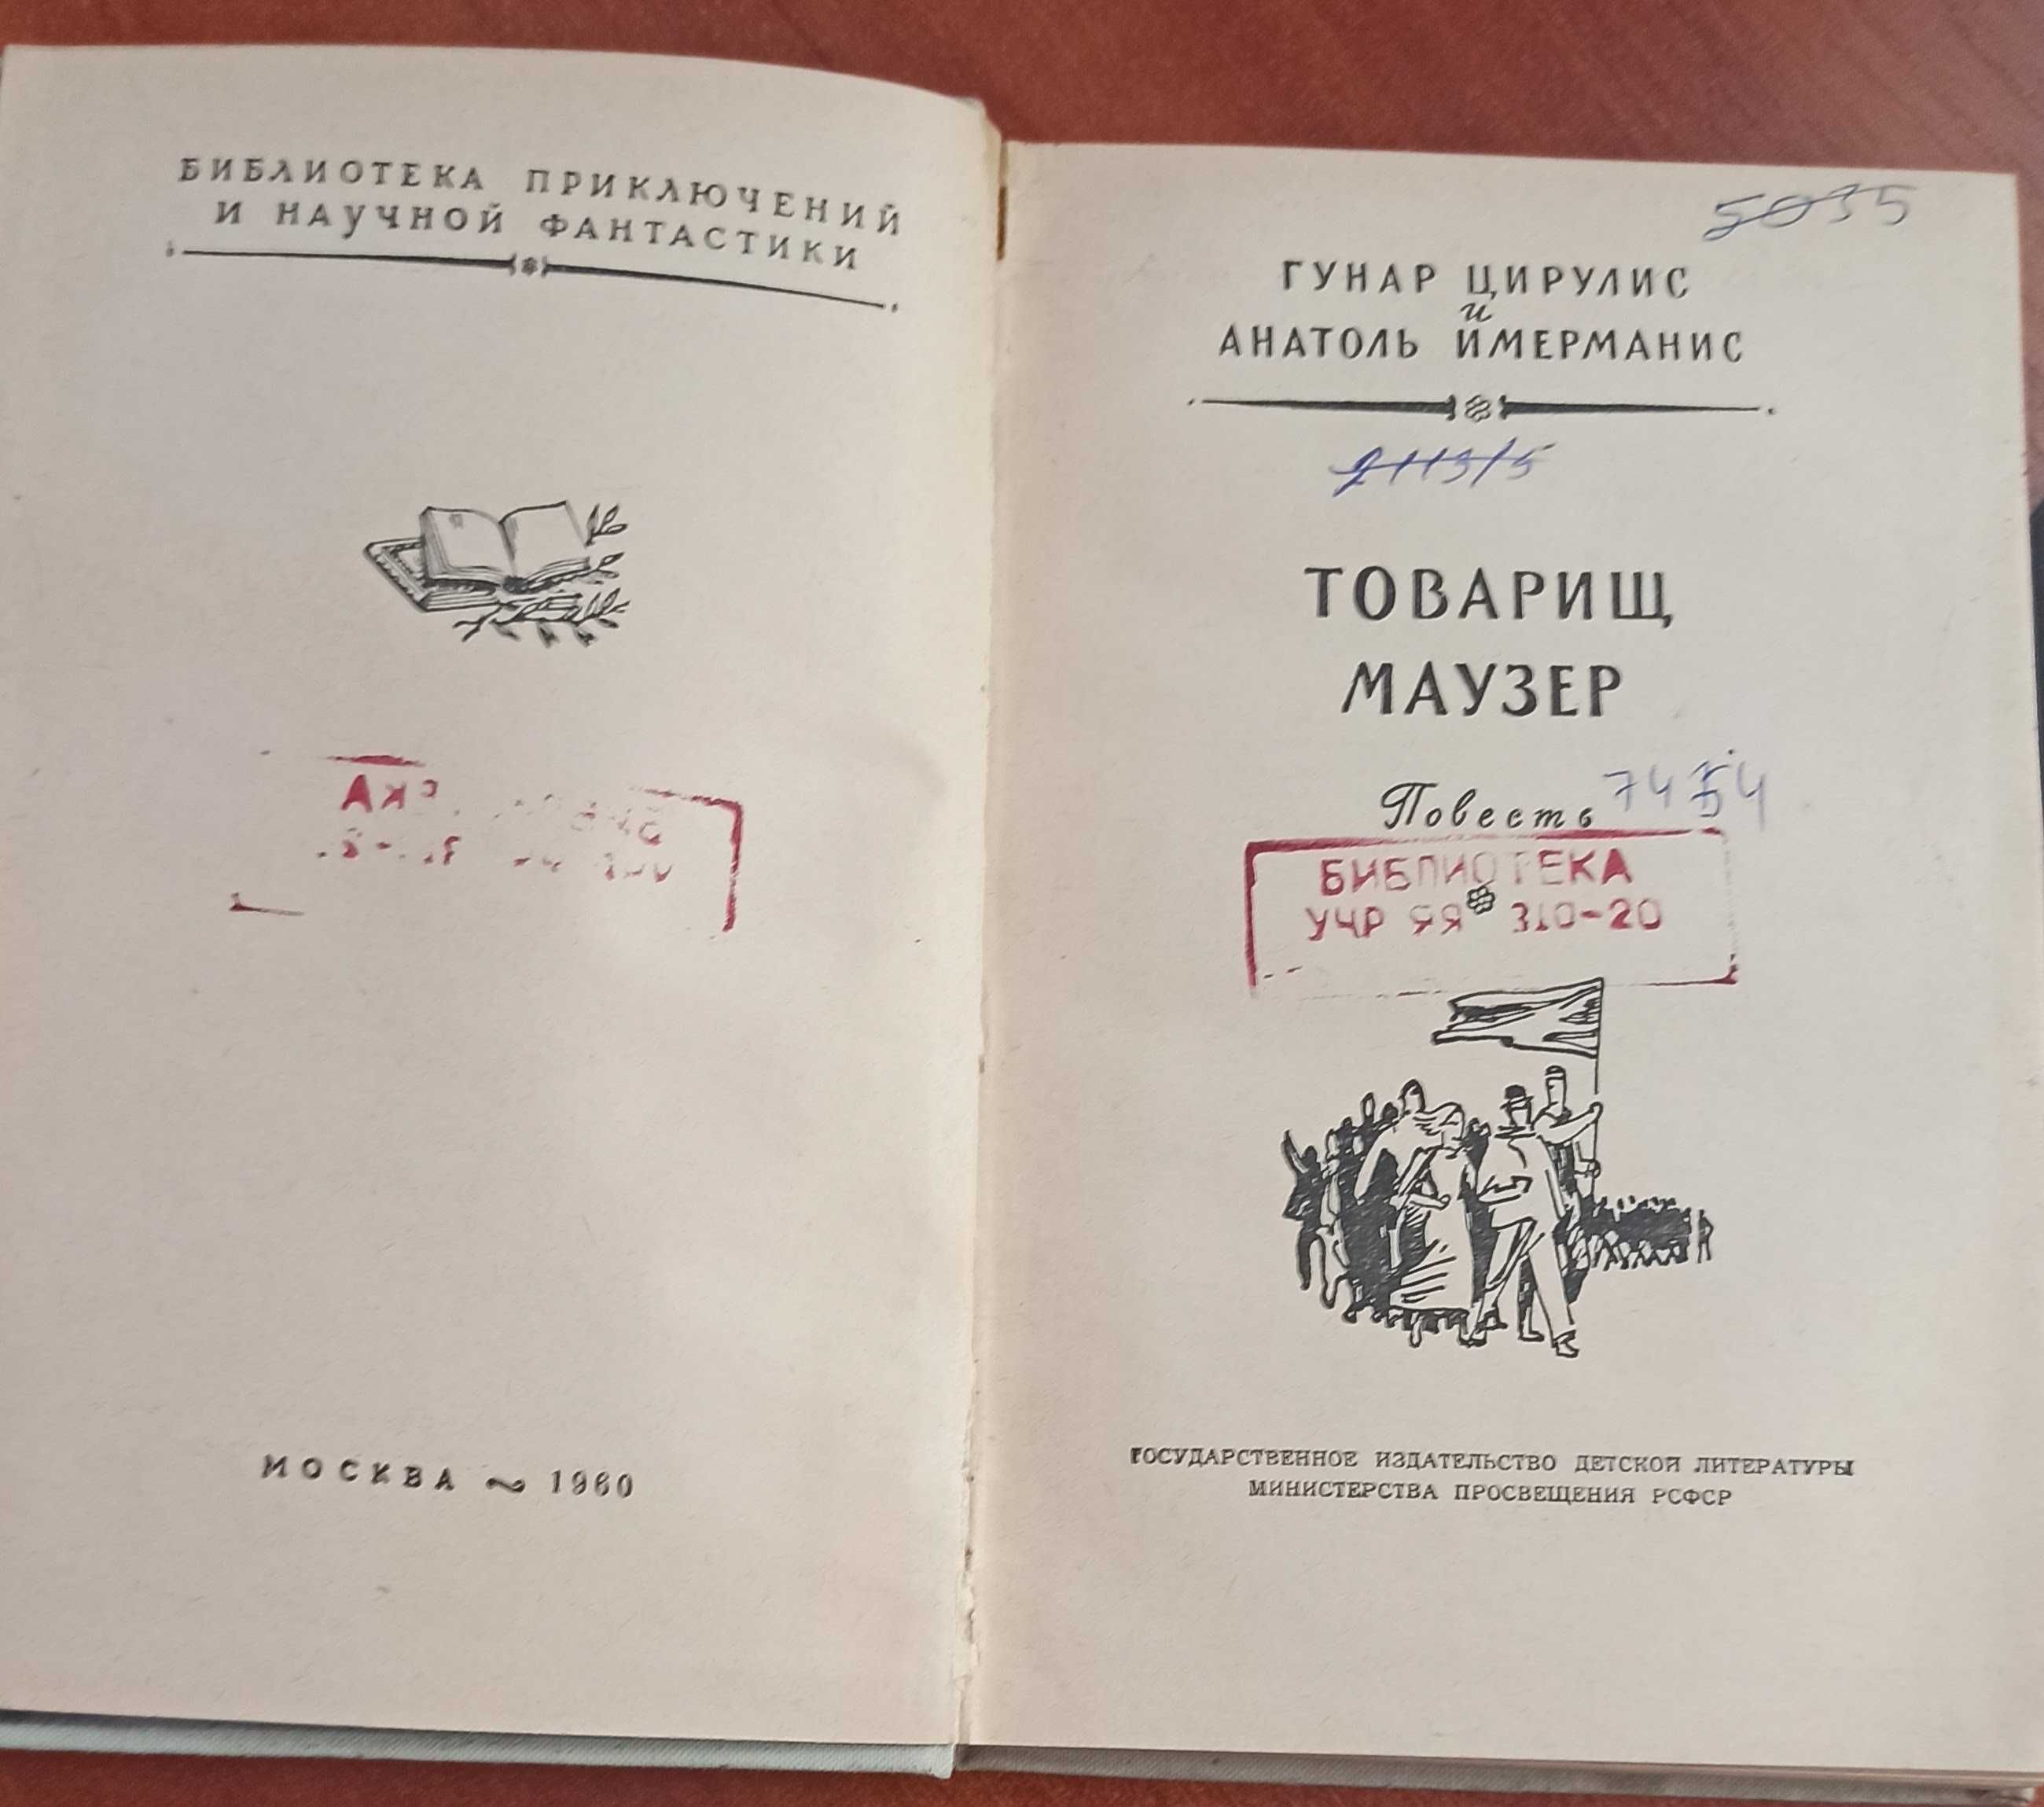 Книга Г. Цирулис та А. Имерманс  "Товарищ Маузер" 1960 рік